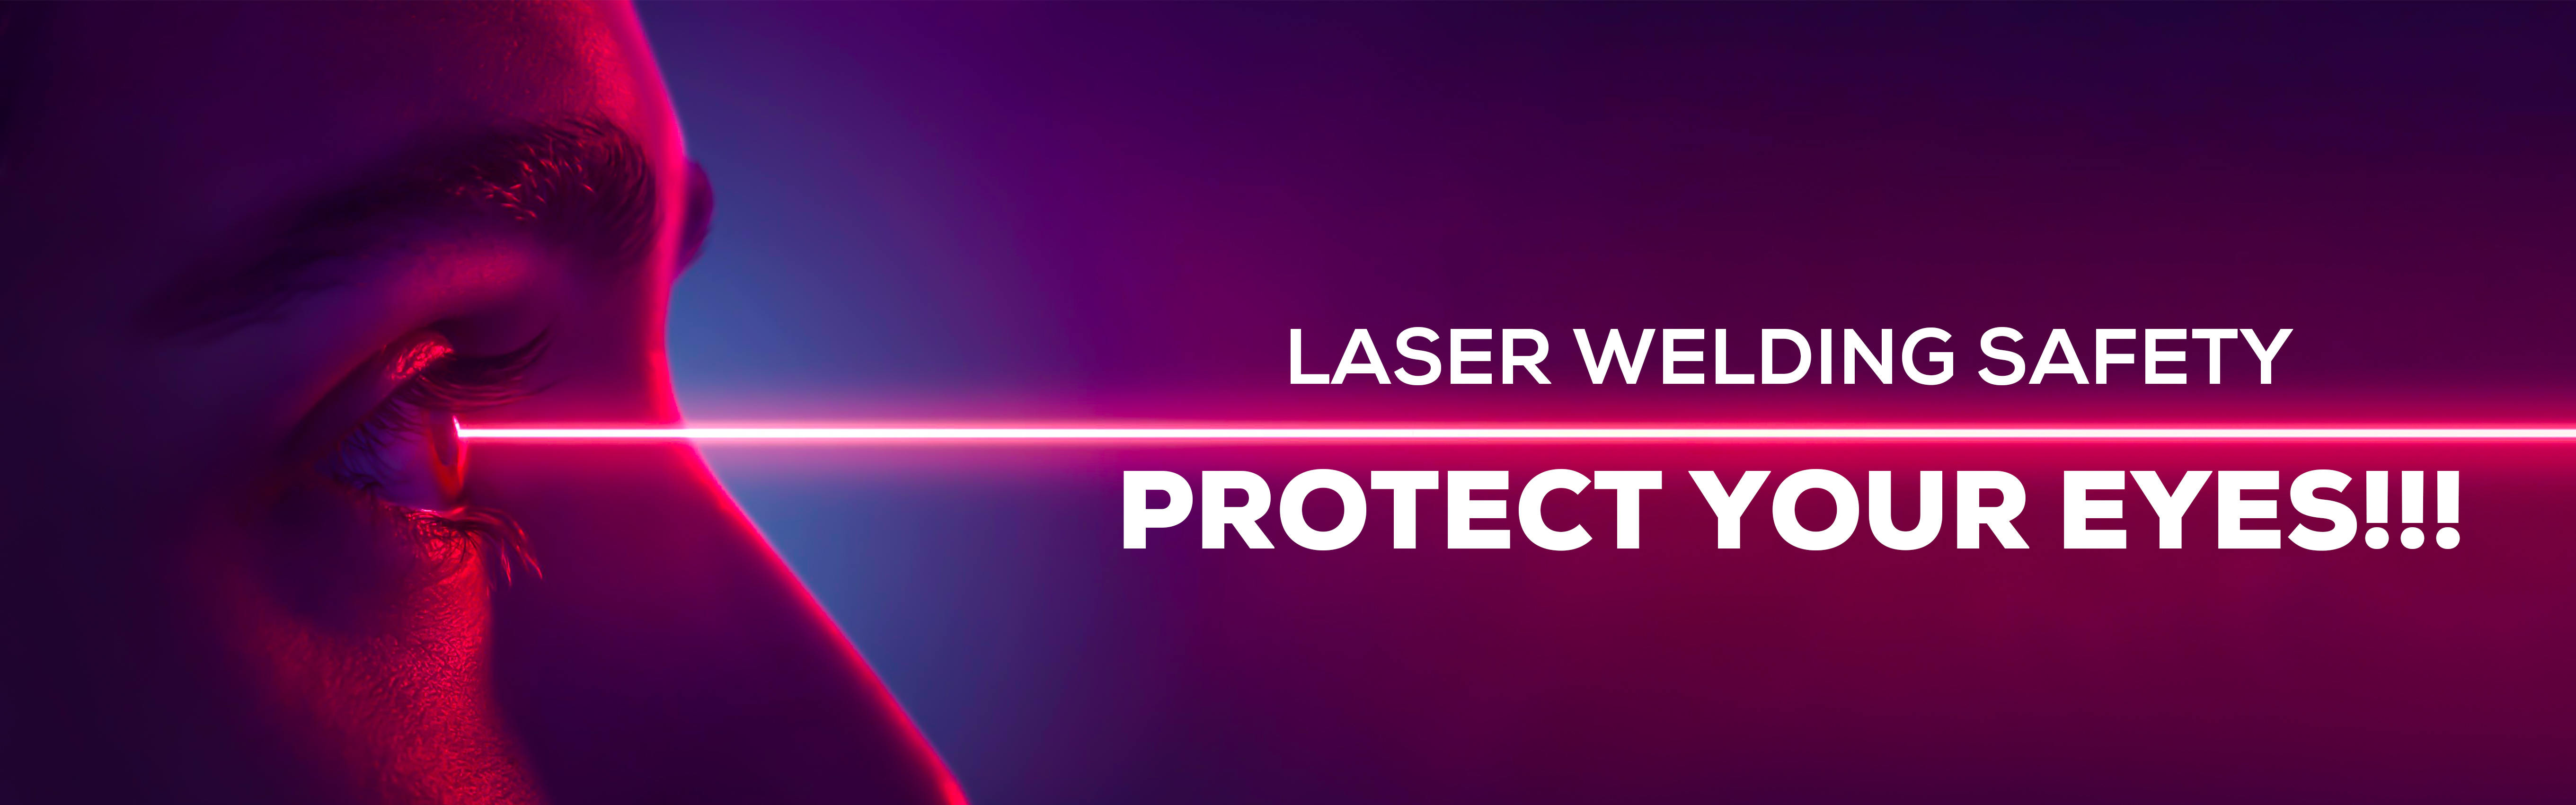 segurança na soldagem a laser